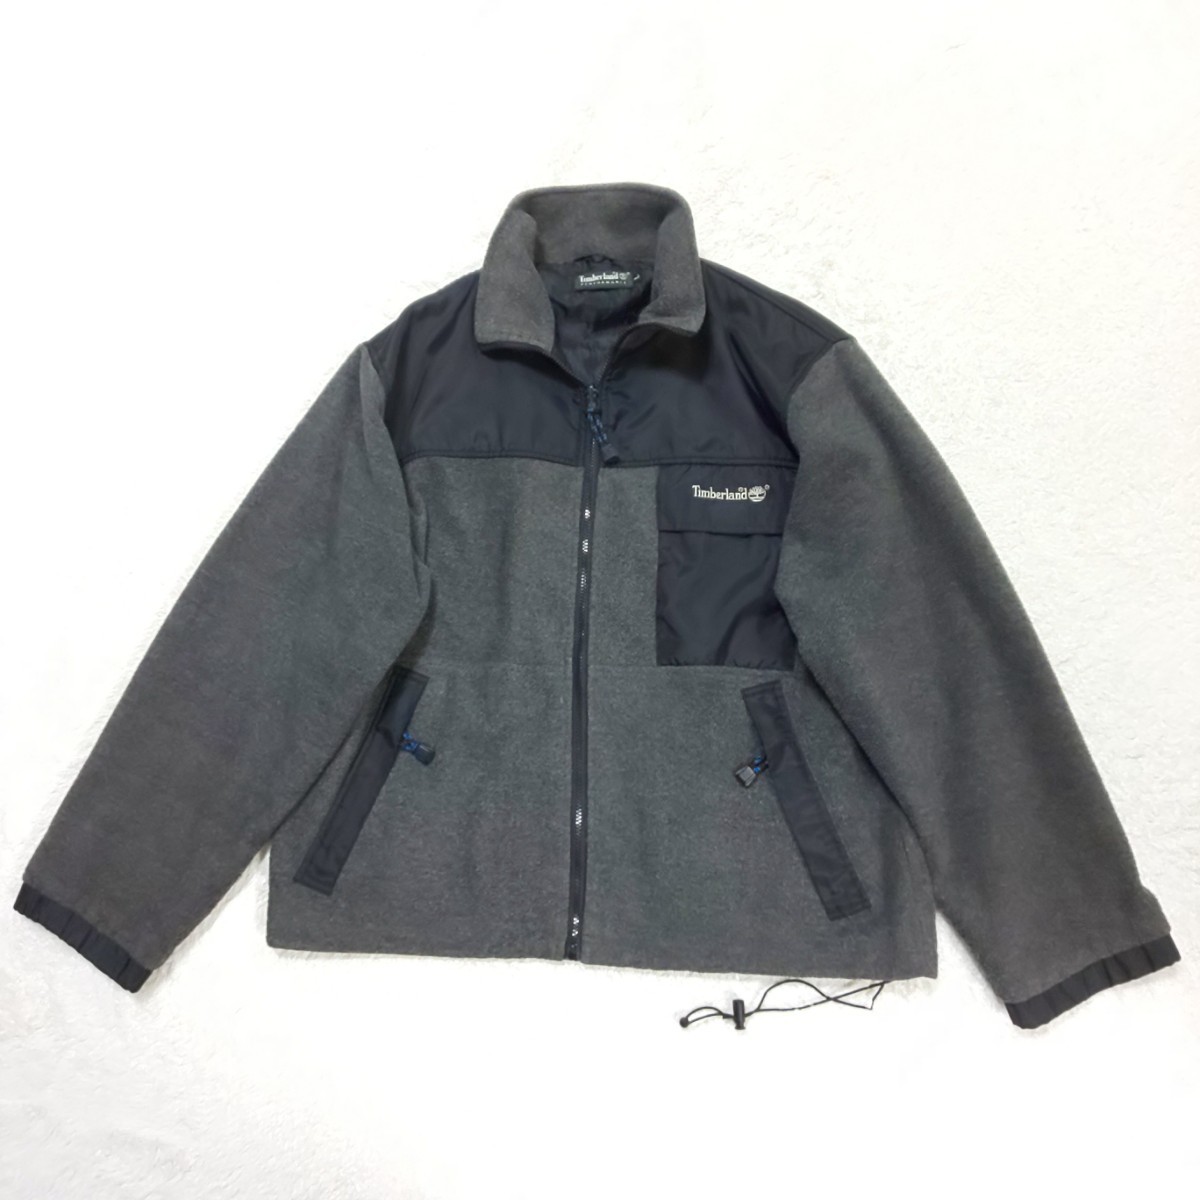 [ превосходный товар / редкий ]90s Timberland Timberland Vintage флис жакет (L) блузон вышивка Logo черный × темно-серый мужской 